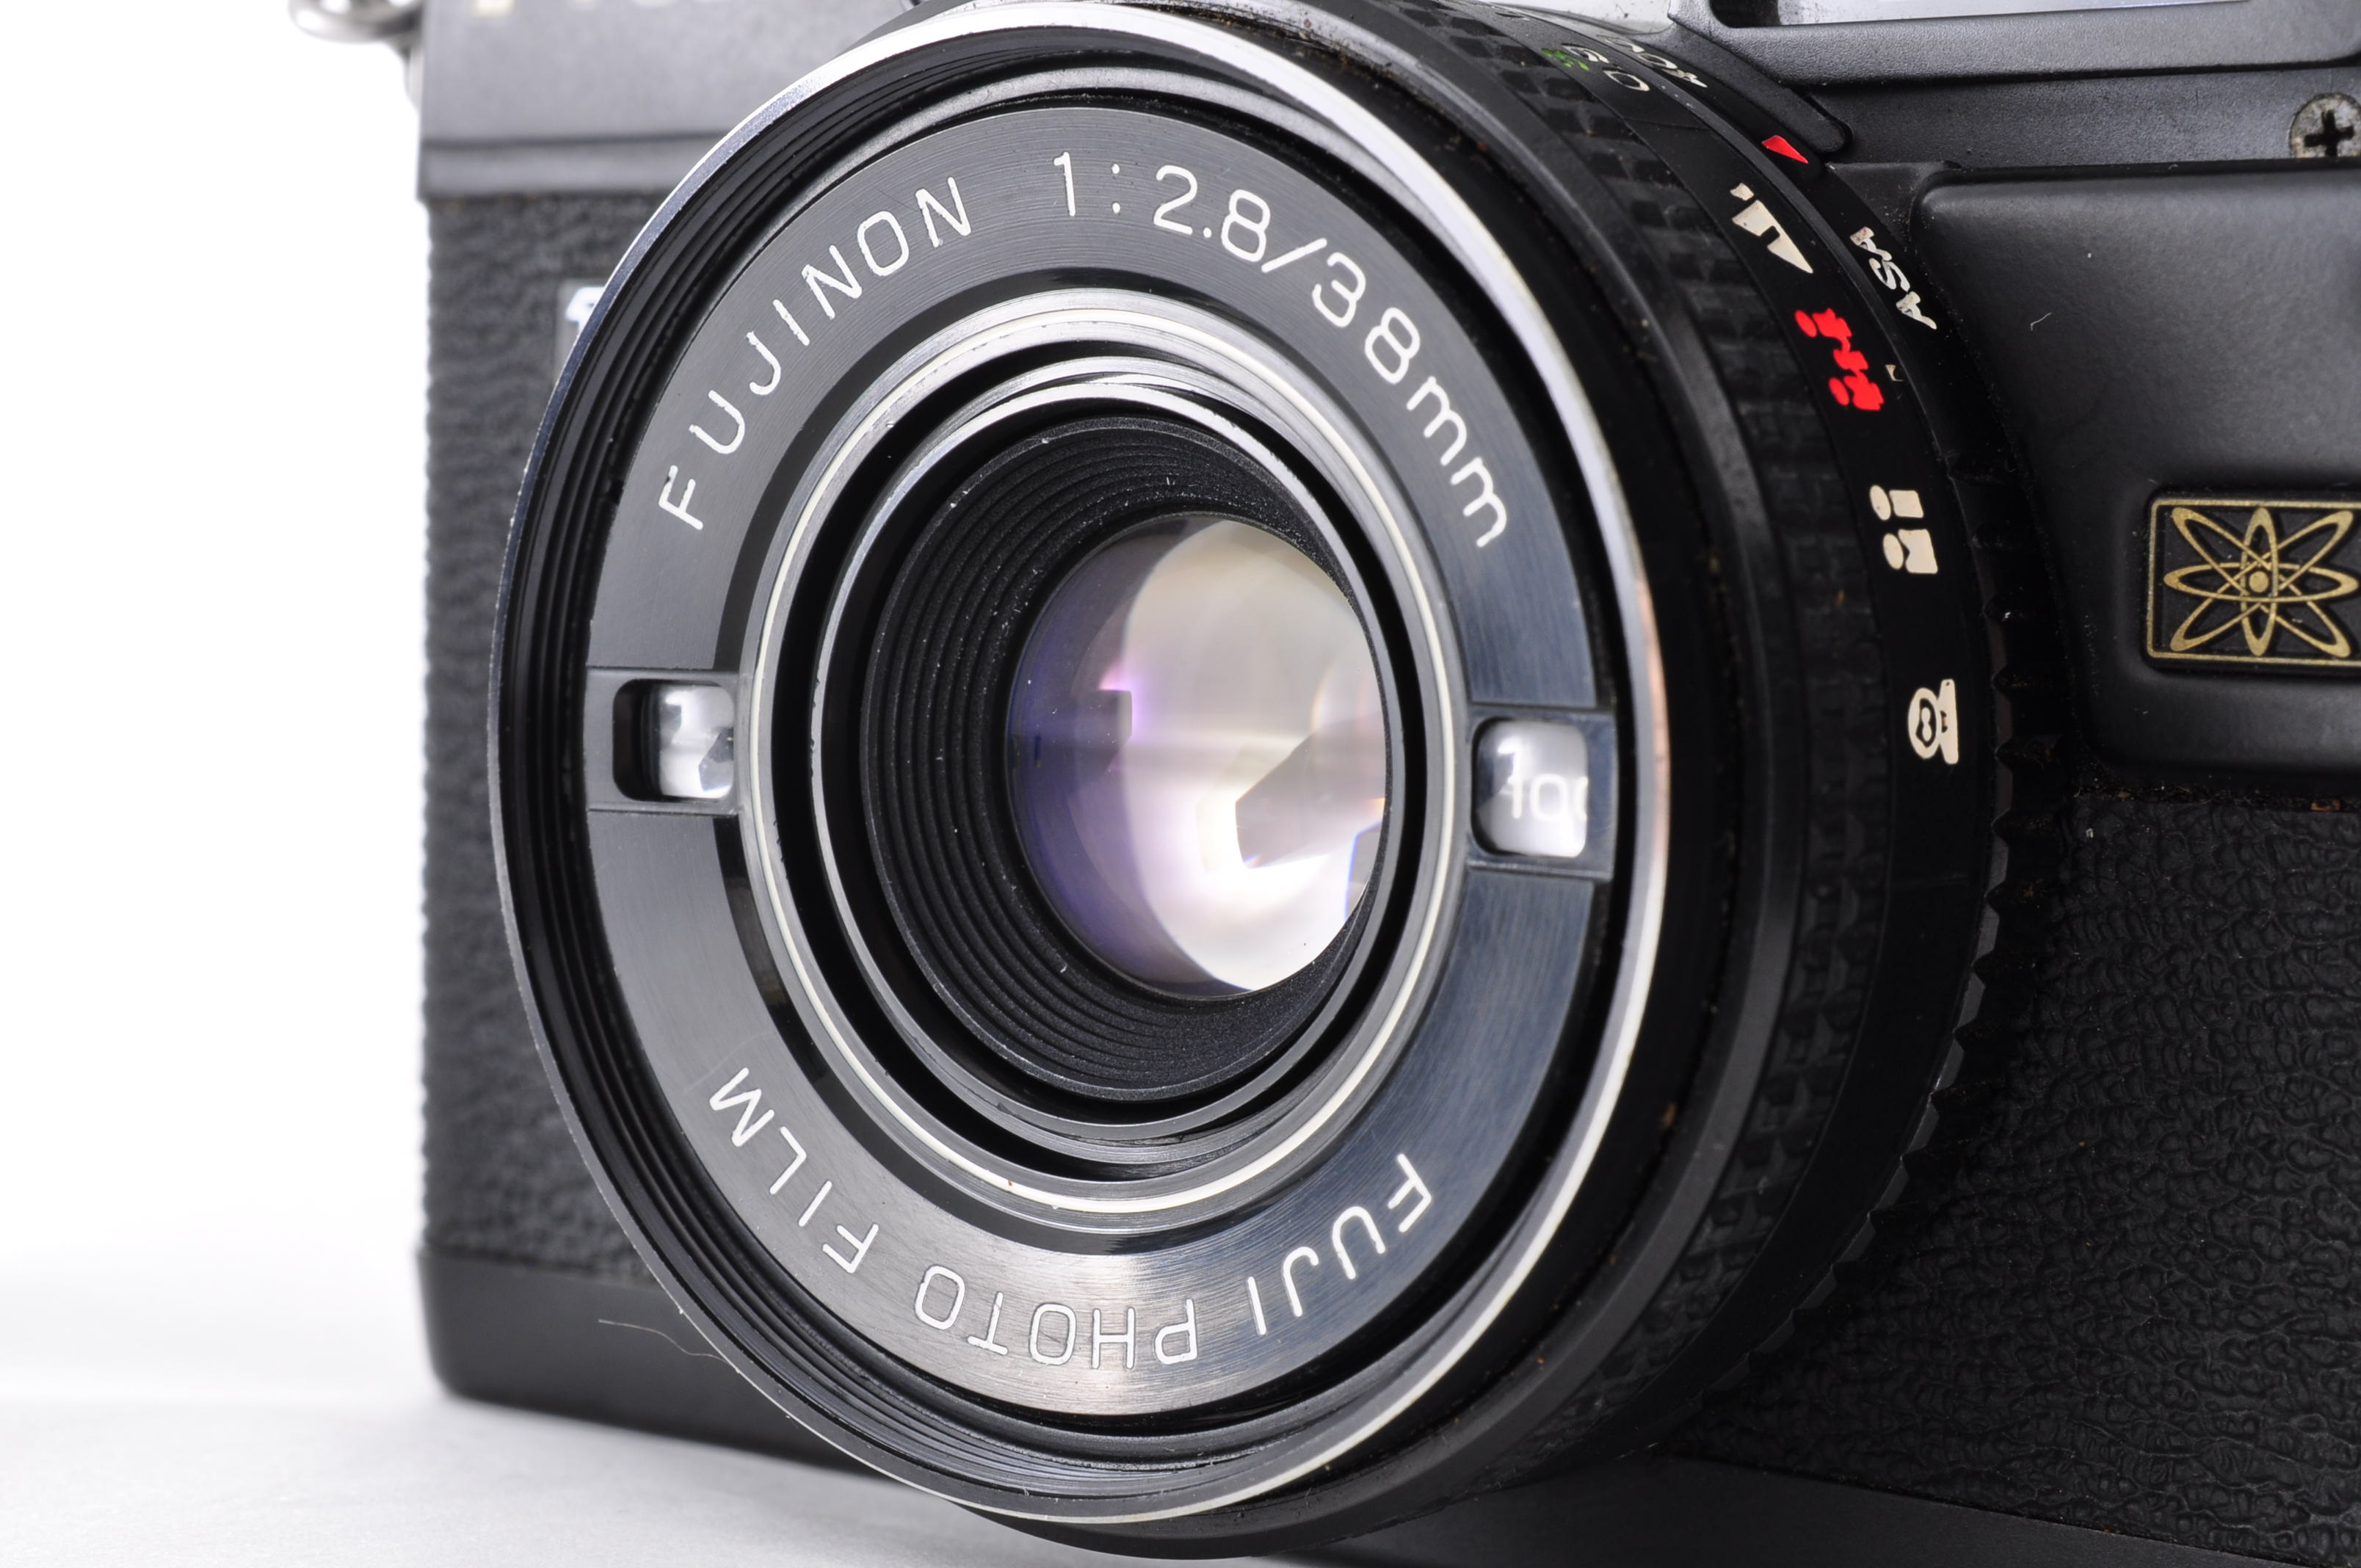 Fuji Fujifilm Flash Fujica Date Rangefinder 35mm Film Camera [Near MINT] JAPAN img07